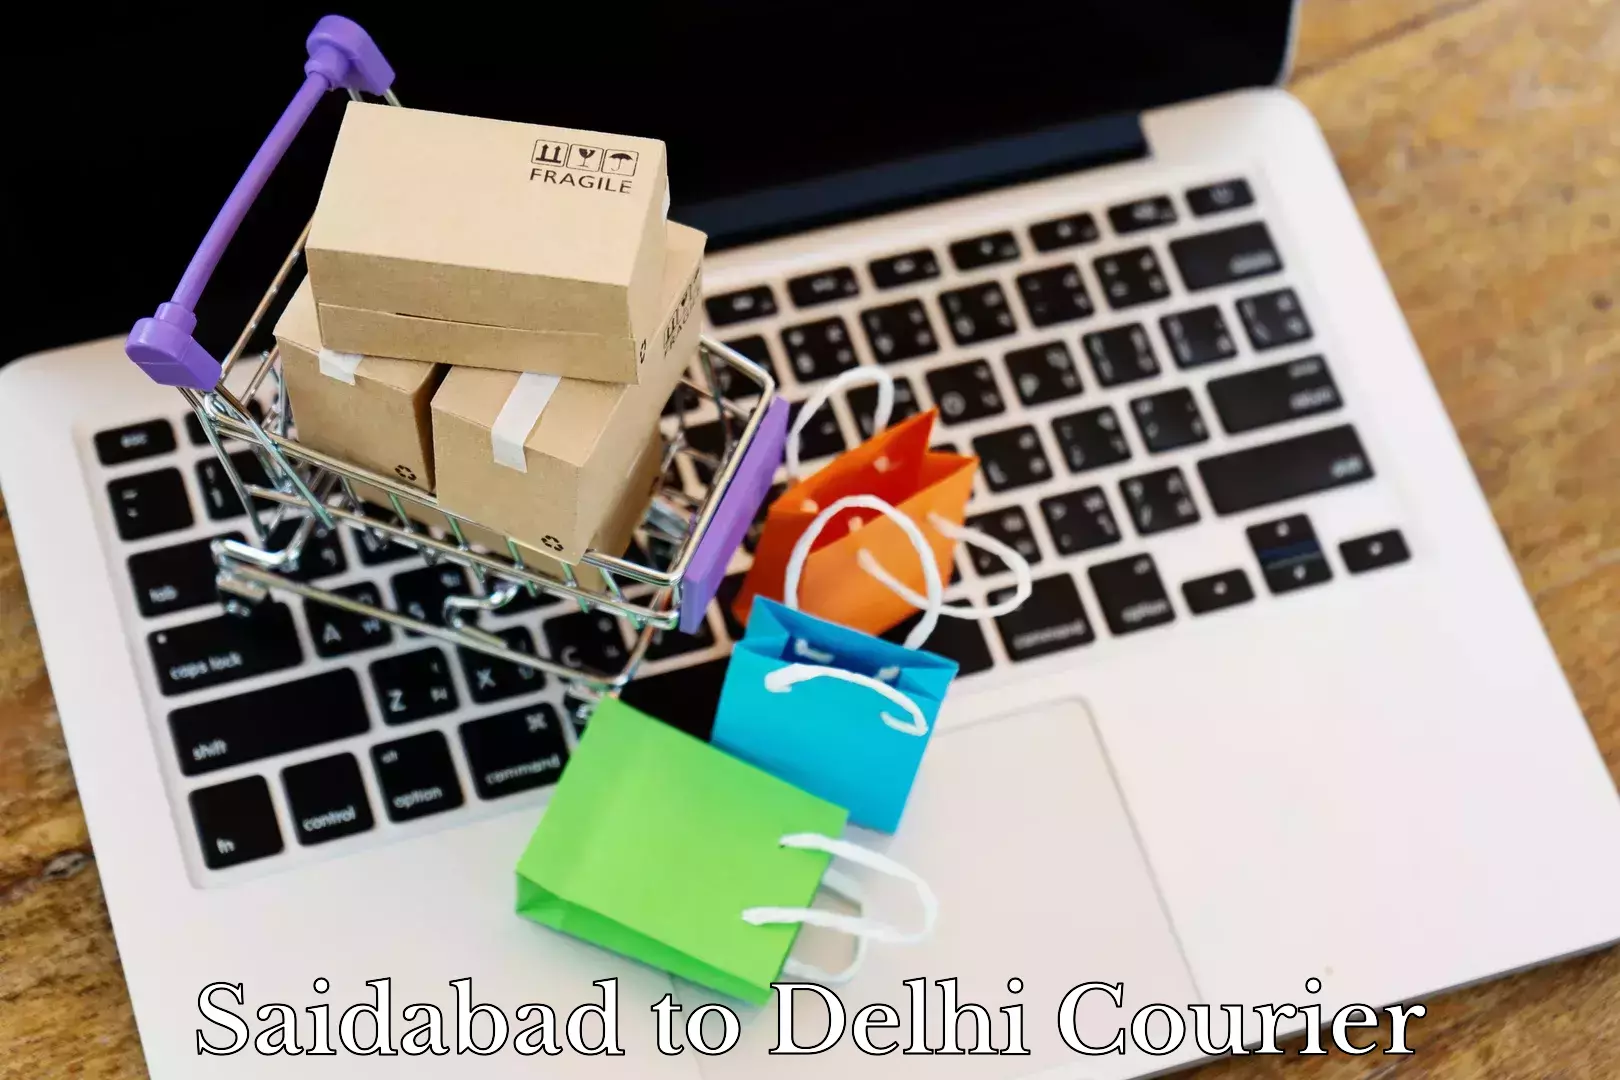 Baggage shipping calculator Saidabad to Delhi